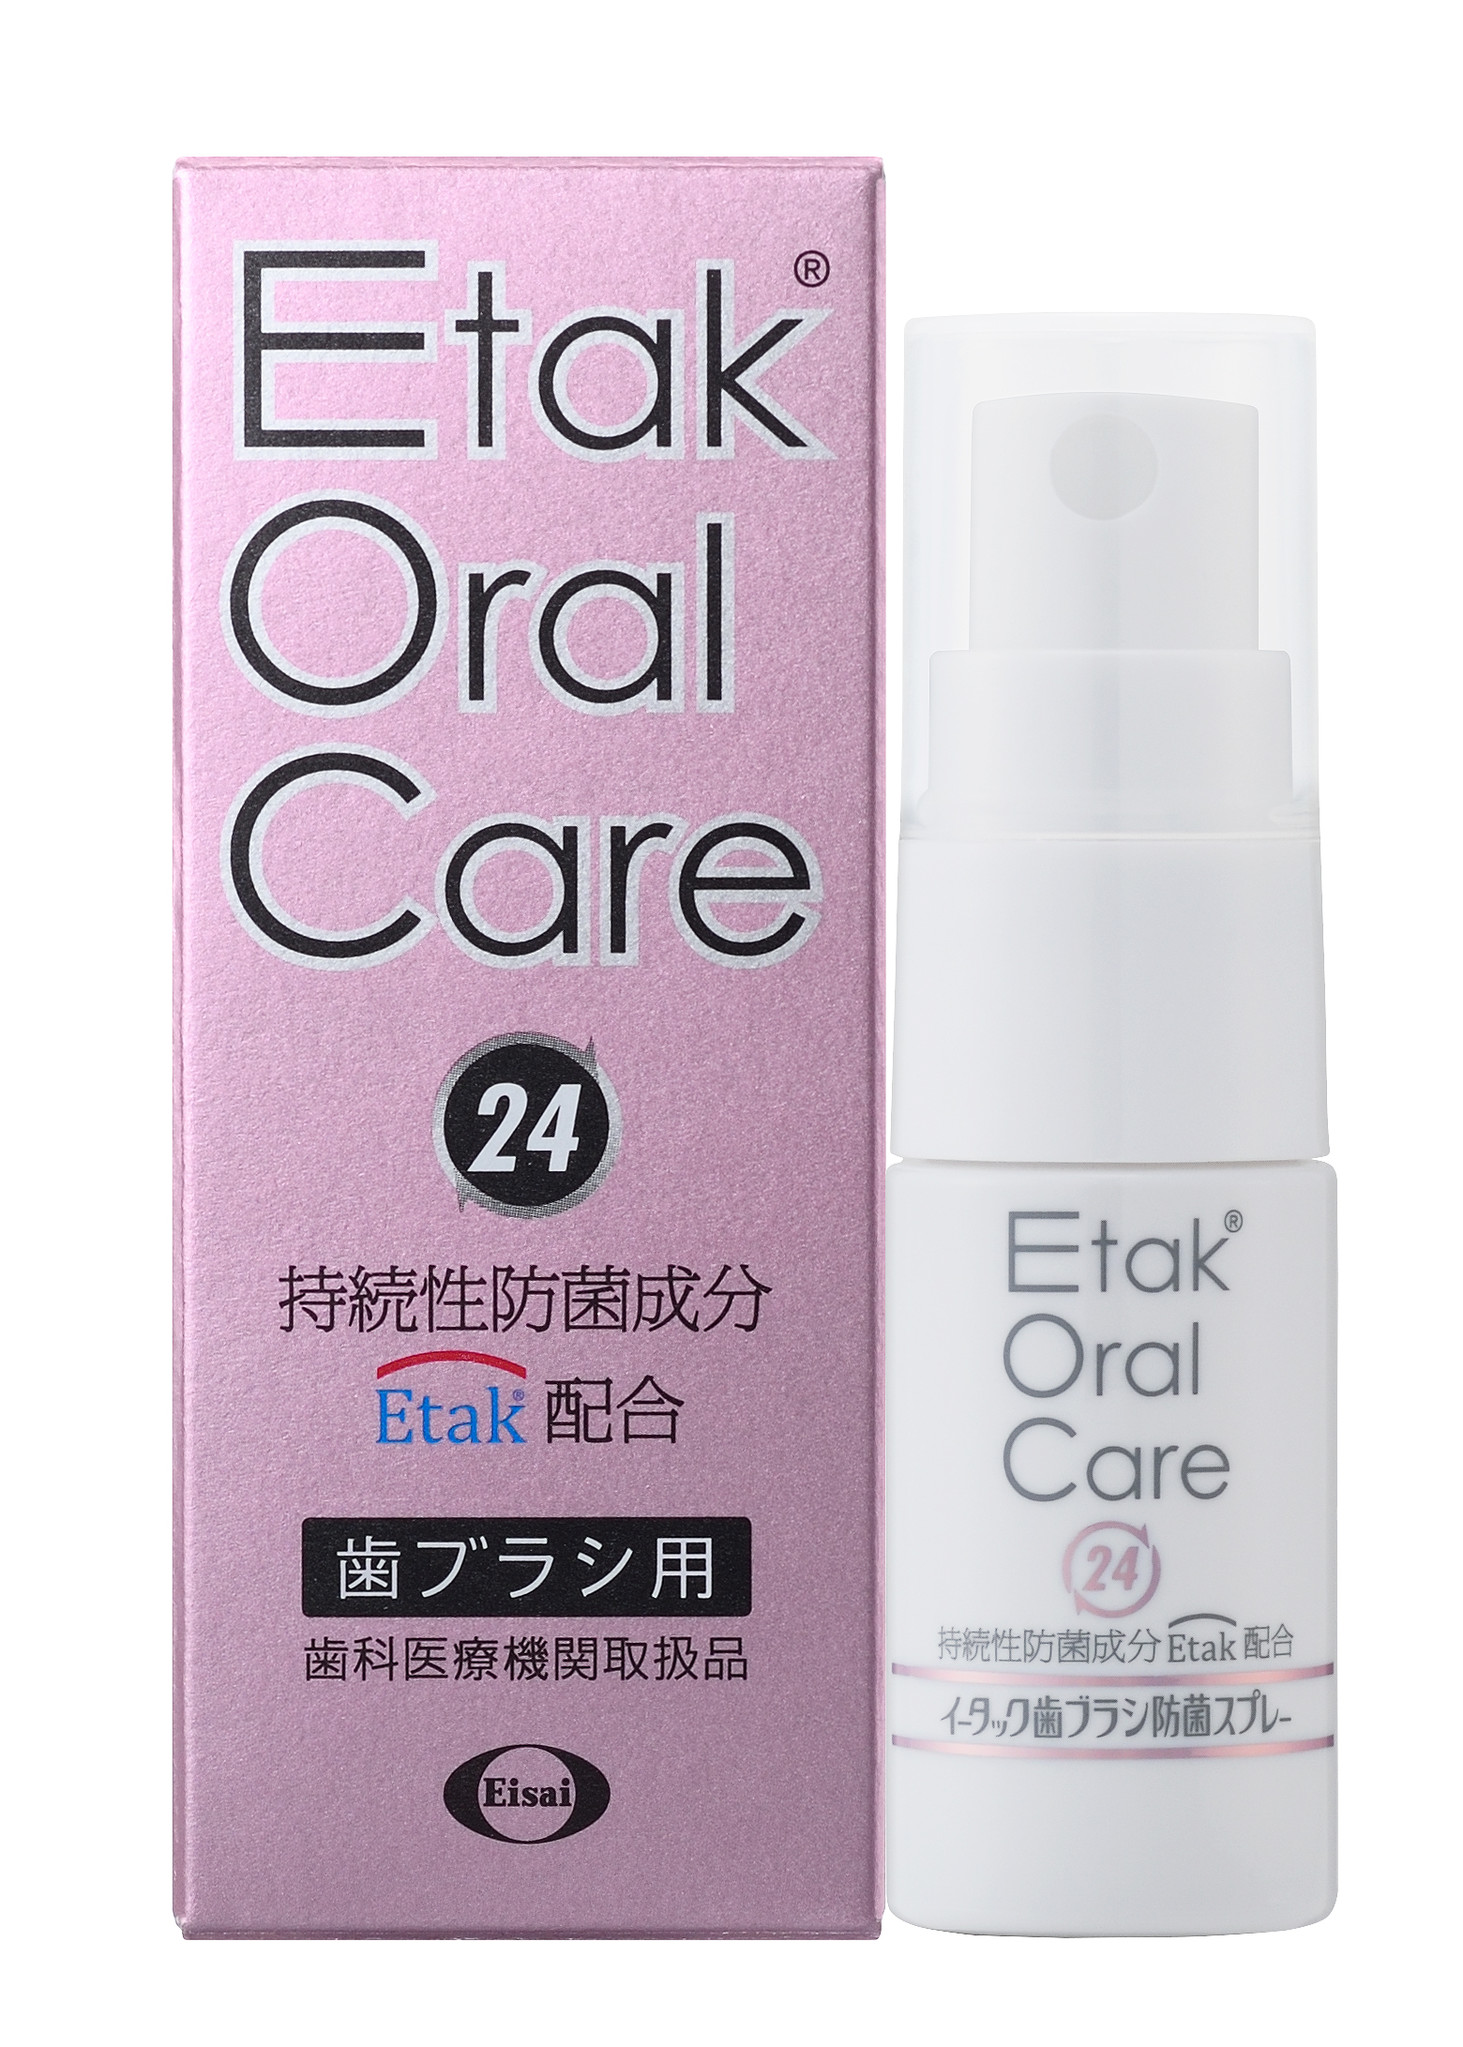 「歯ブラシを防菌する」という新しい生活習慣を提案する歯科医療施設専売製品「Etak Oral Care 24 歯ブラシ防菌スプレー」を発売開始。